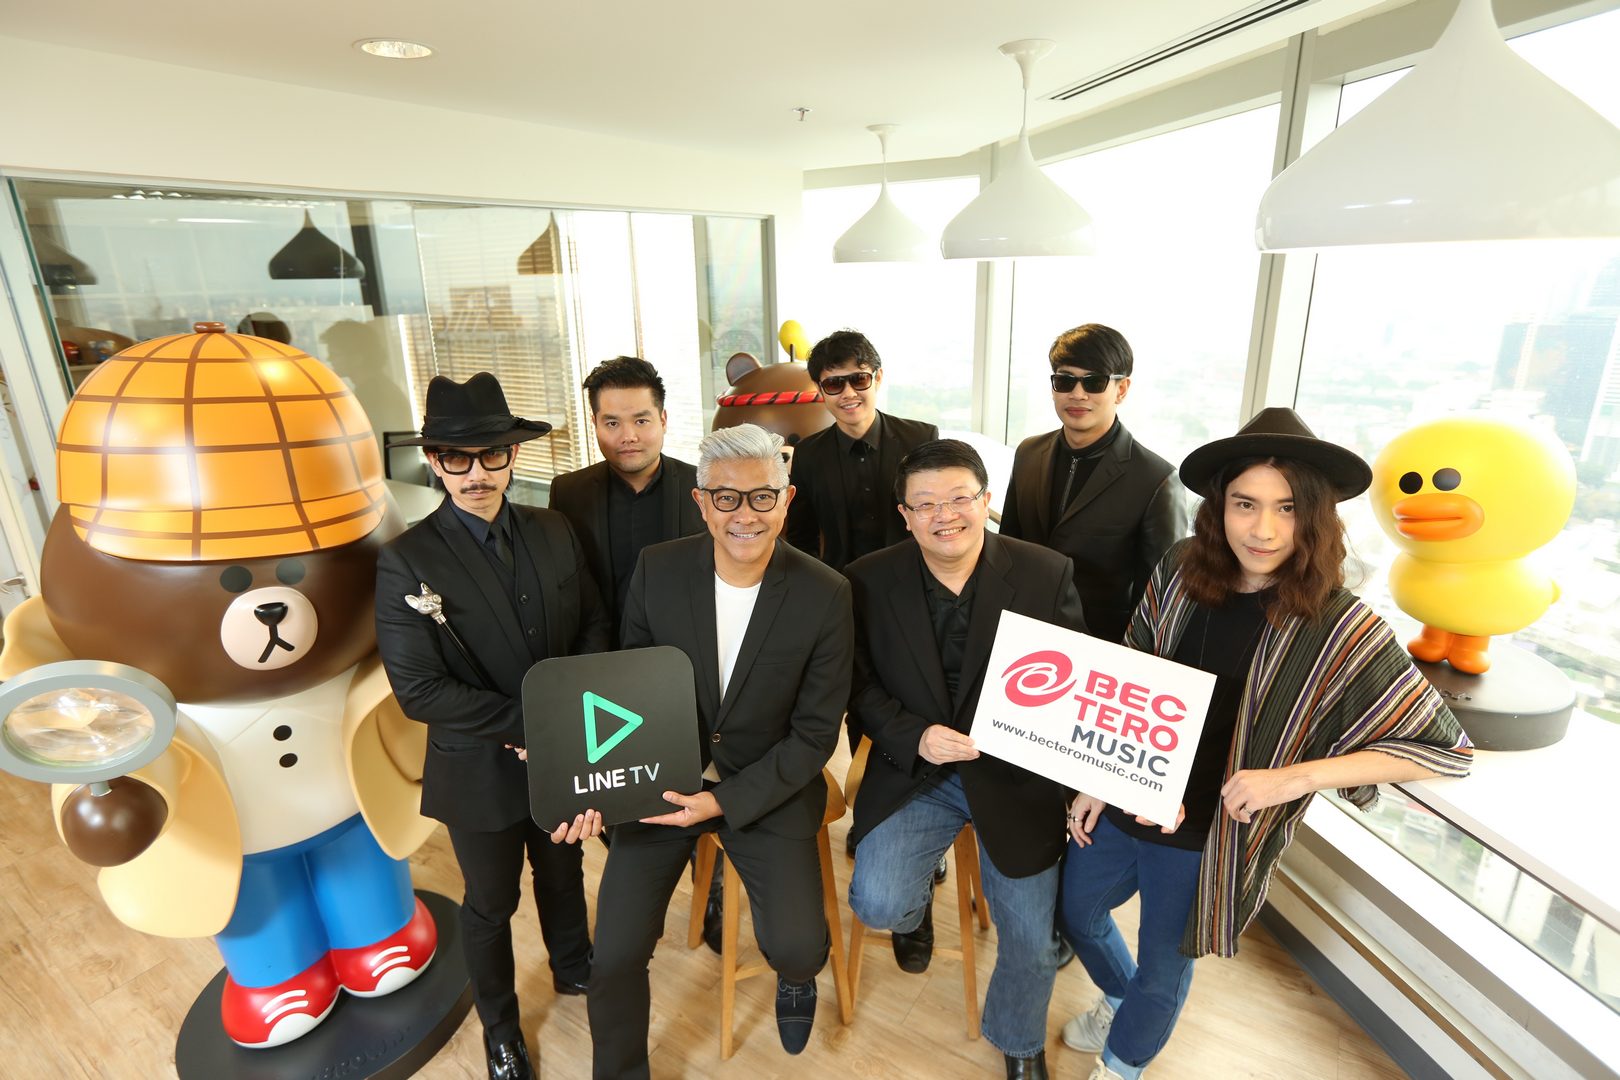 BEC Tero Music จับมือ LINE TV ส่ง MV และเนื้อหากว่า 3,000 นาทีให้รับชมฟรี